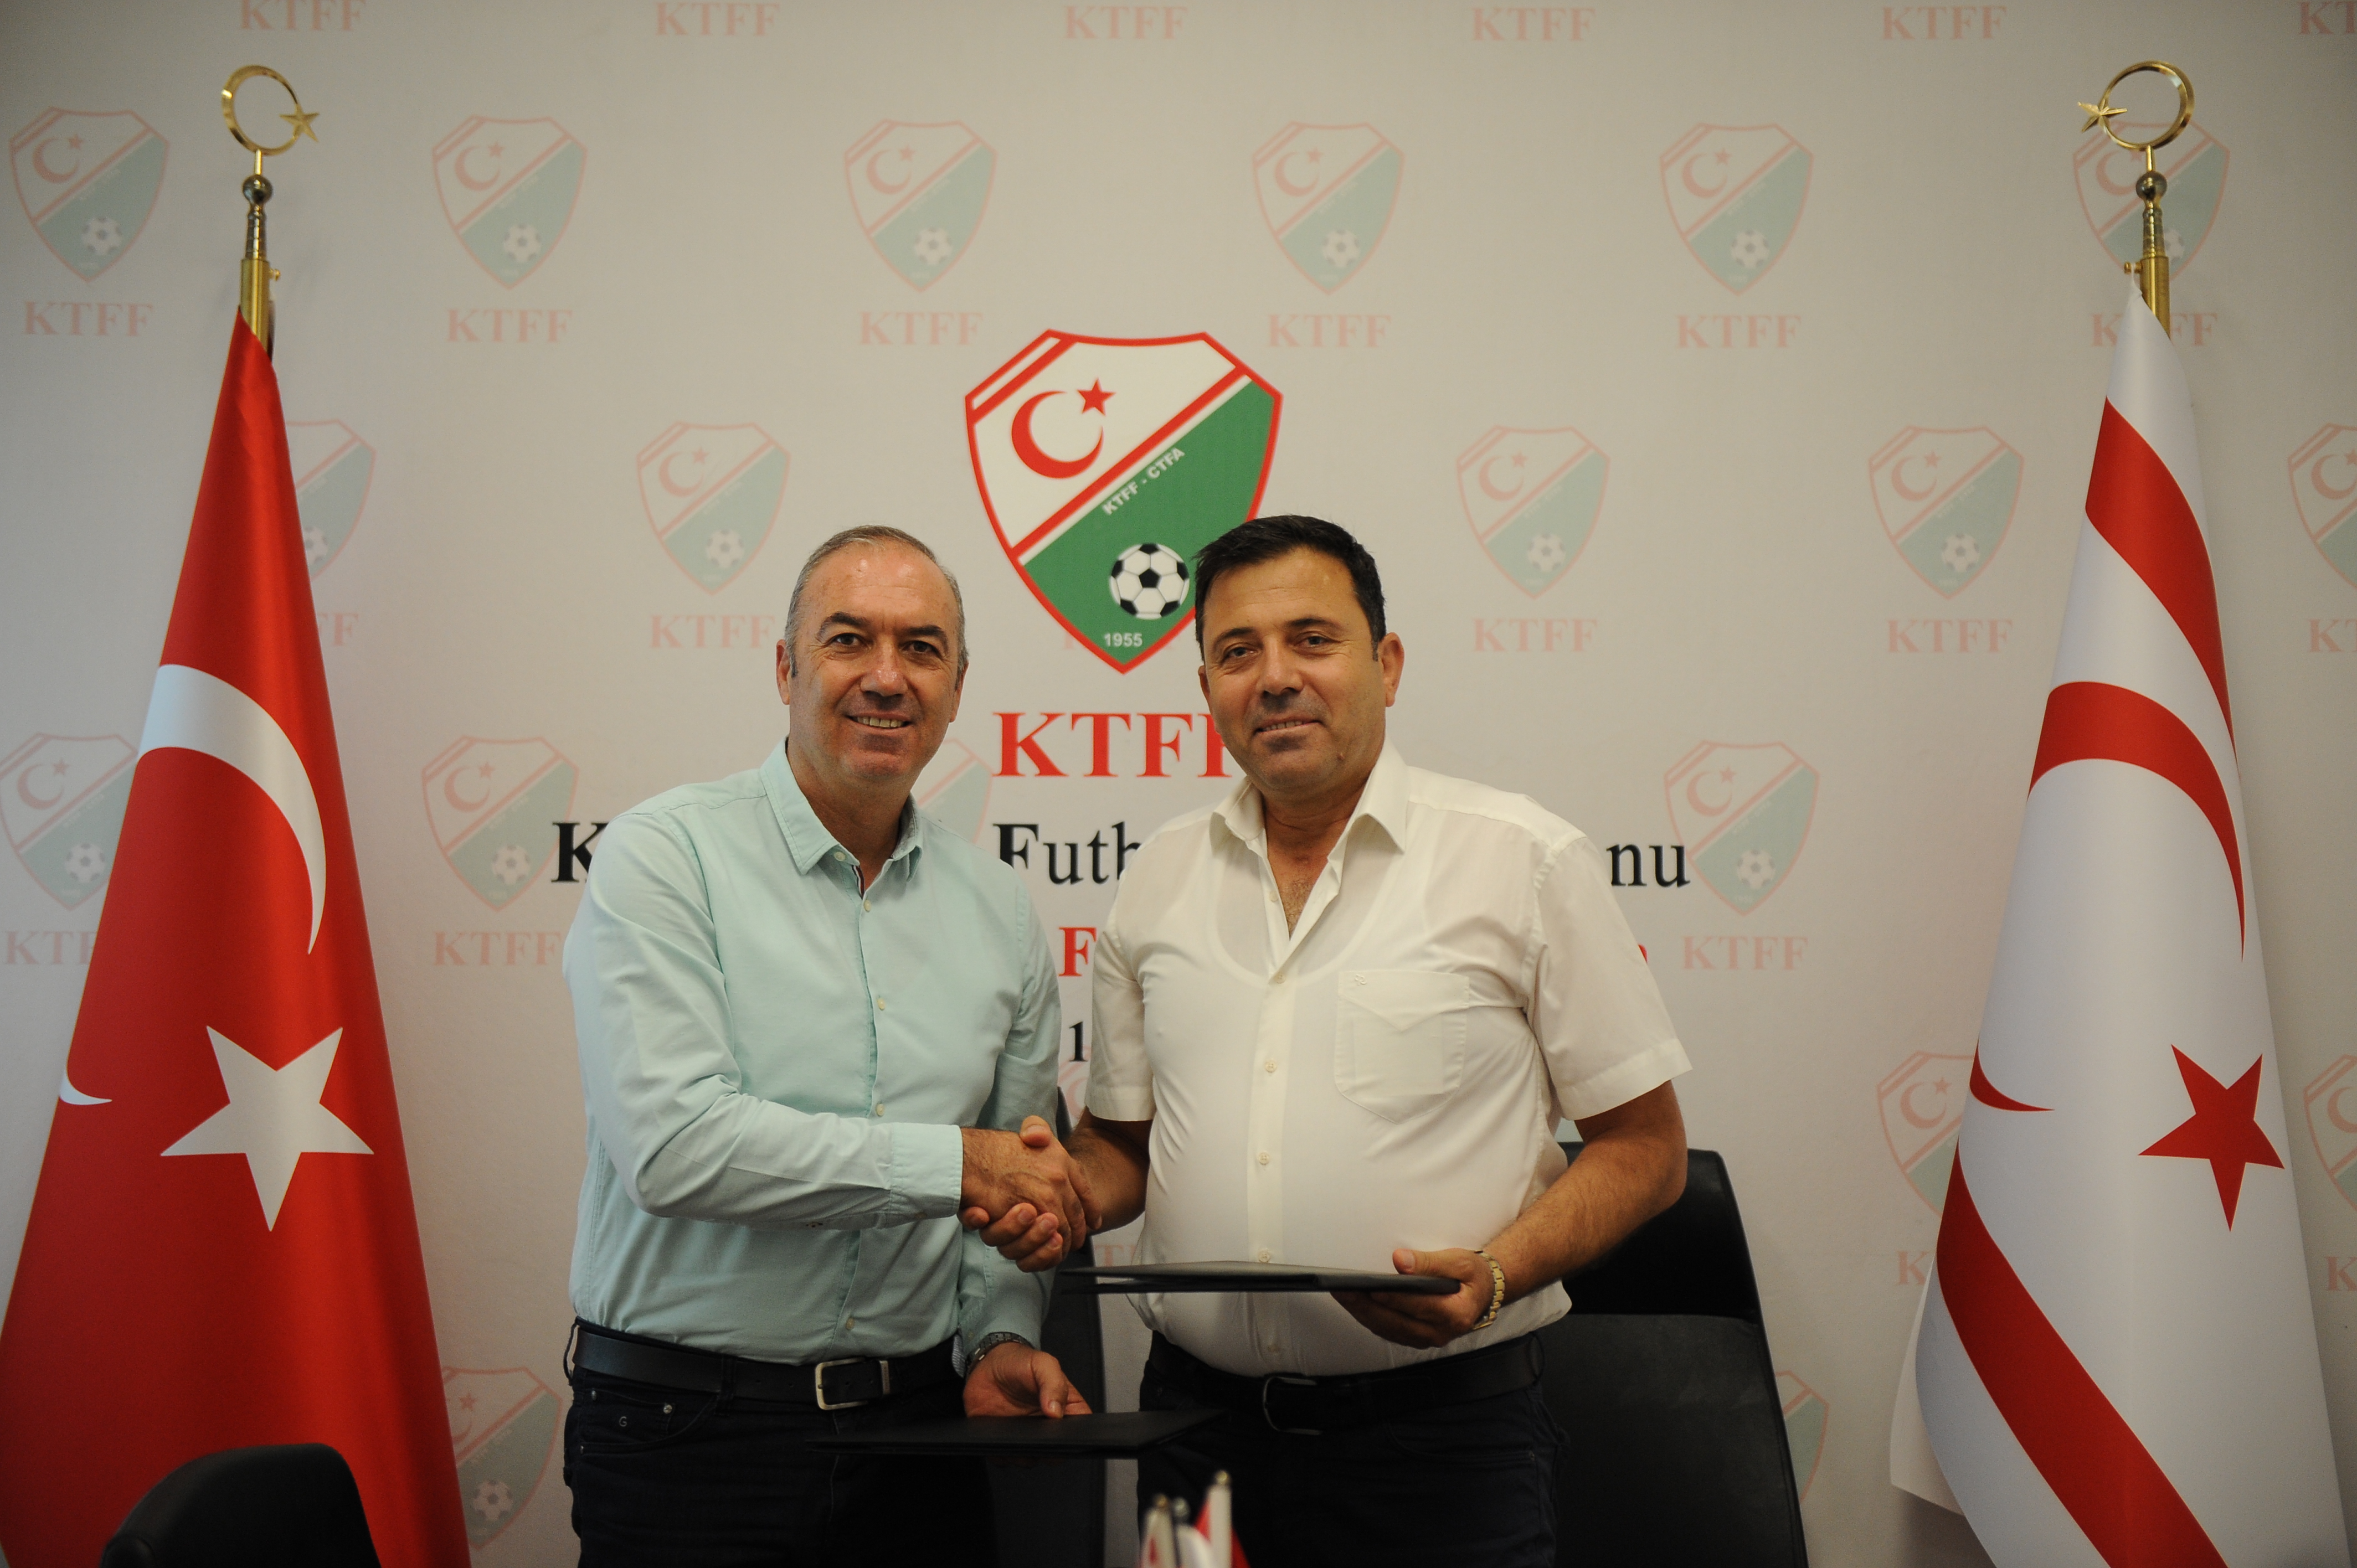 KTFF ile Asbuzu Ticaret arasında U16 Ligi için sözleşme imzalandı